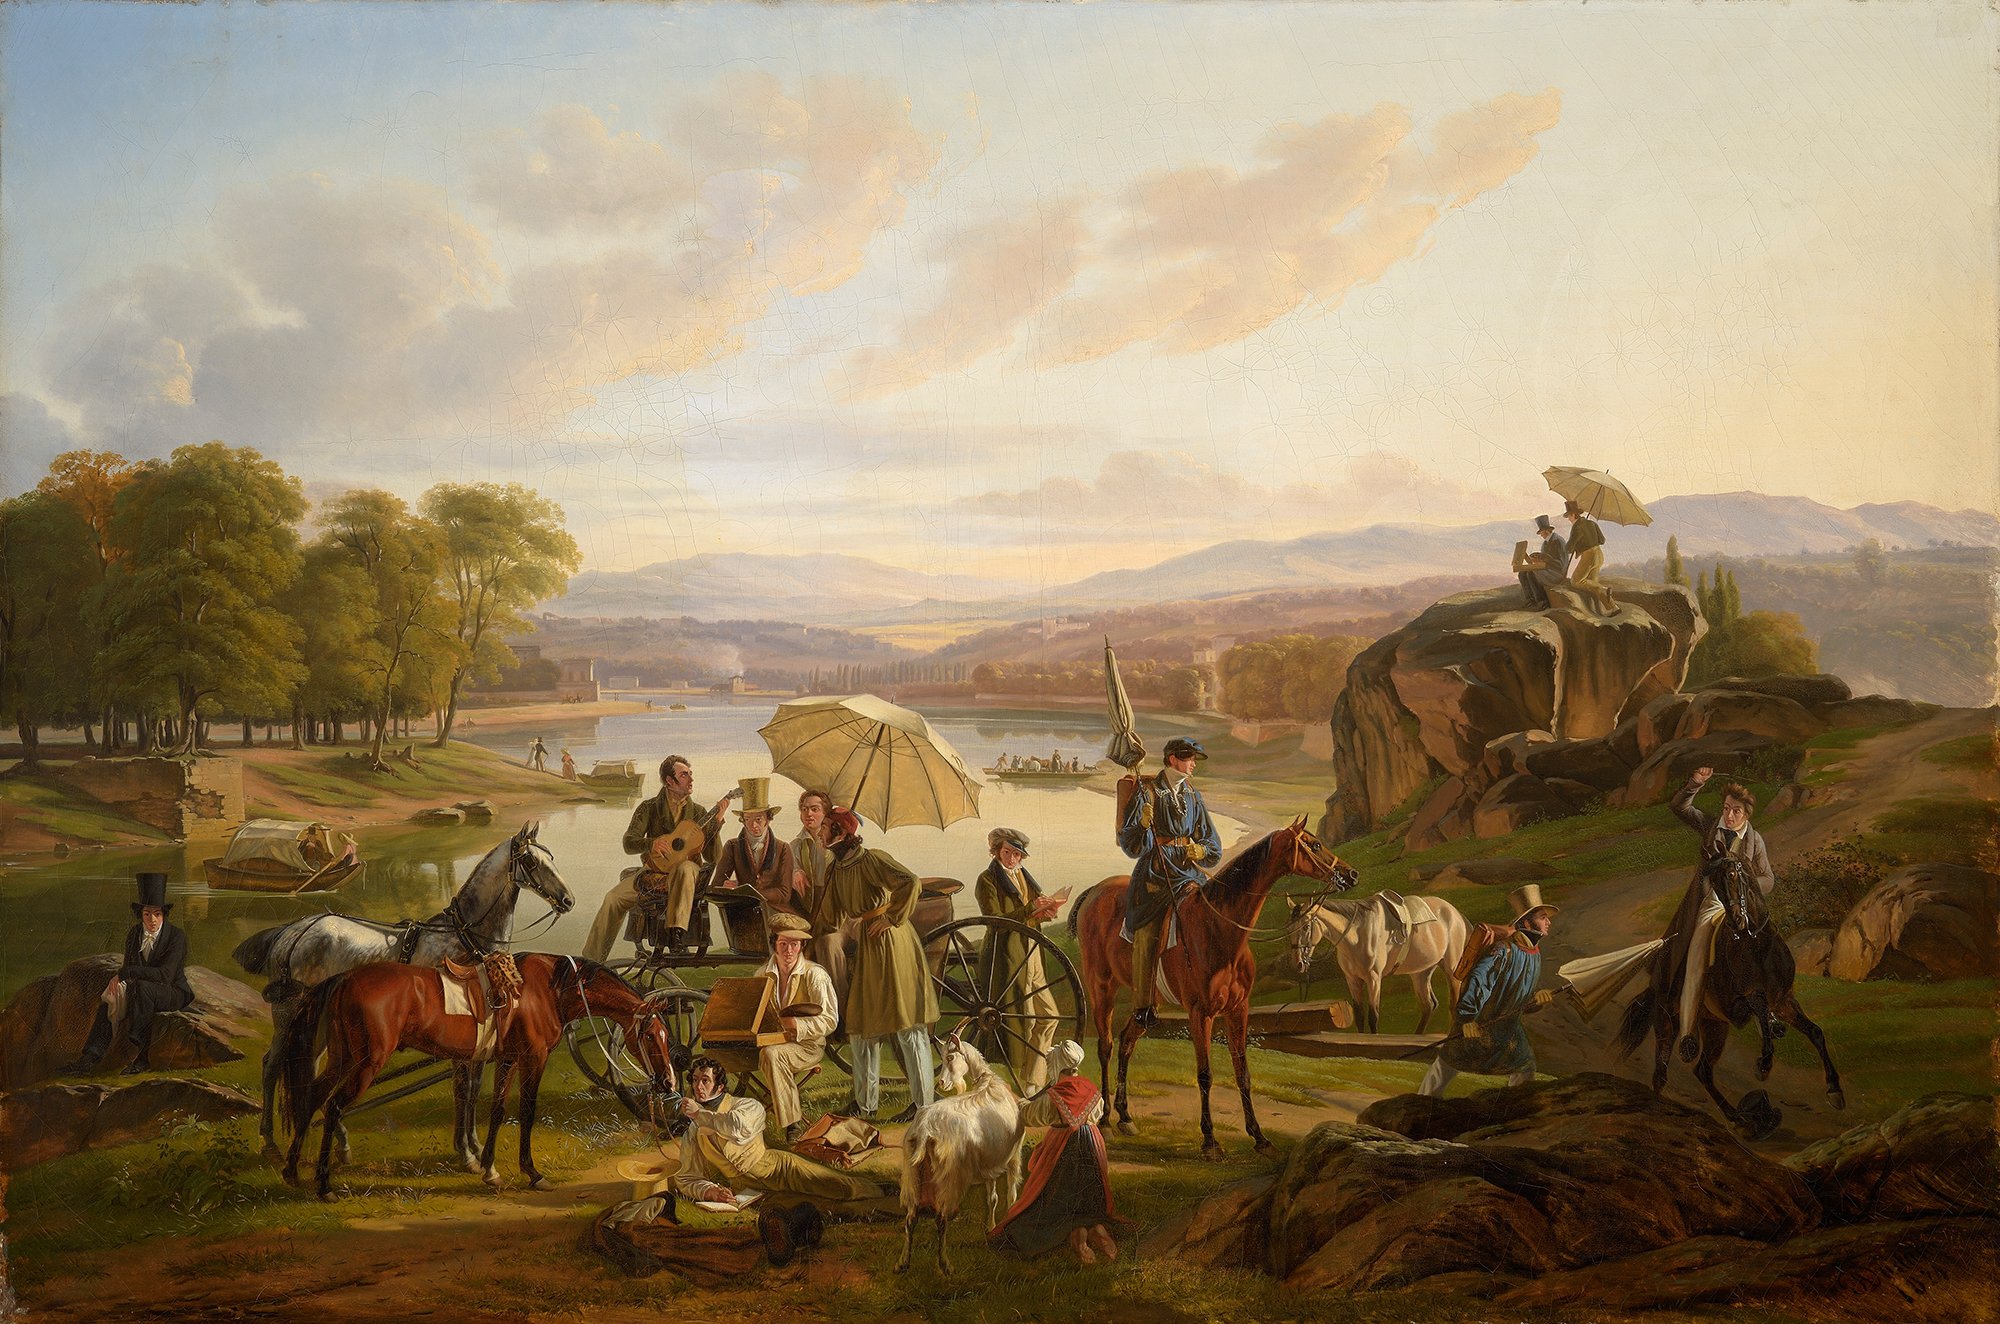 Abbildung des Werks "Rast der Künstler am Ufer der Saône" von Antoine Duclaux aus dem Jahr 1824, das in der Ausstellung "Ich bin hier" vom 31. Oktober 2015 bis 31. Januar 2016 in der Staatlichen Kunsthalle Karlsruhe zu sehen war.